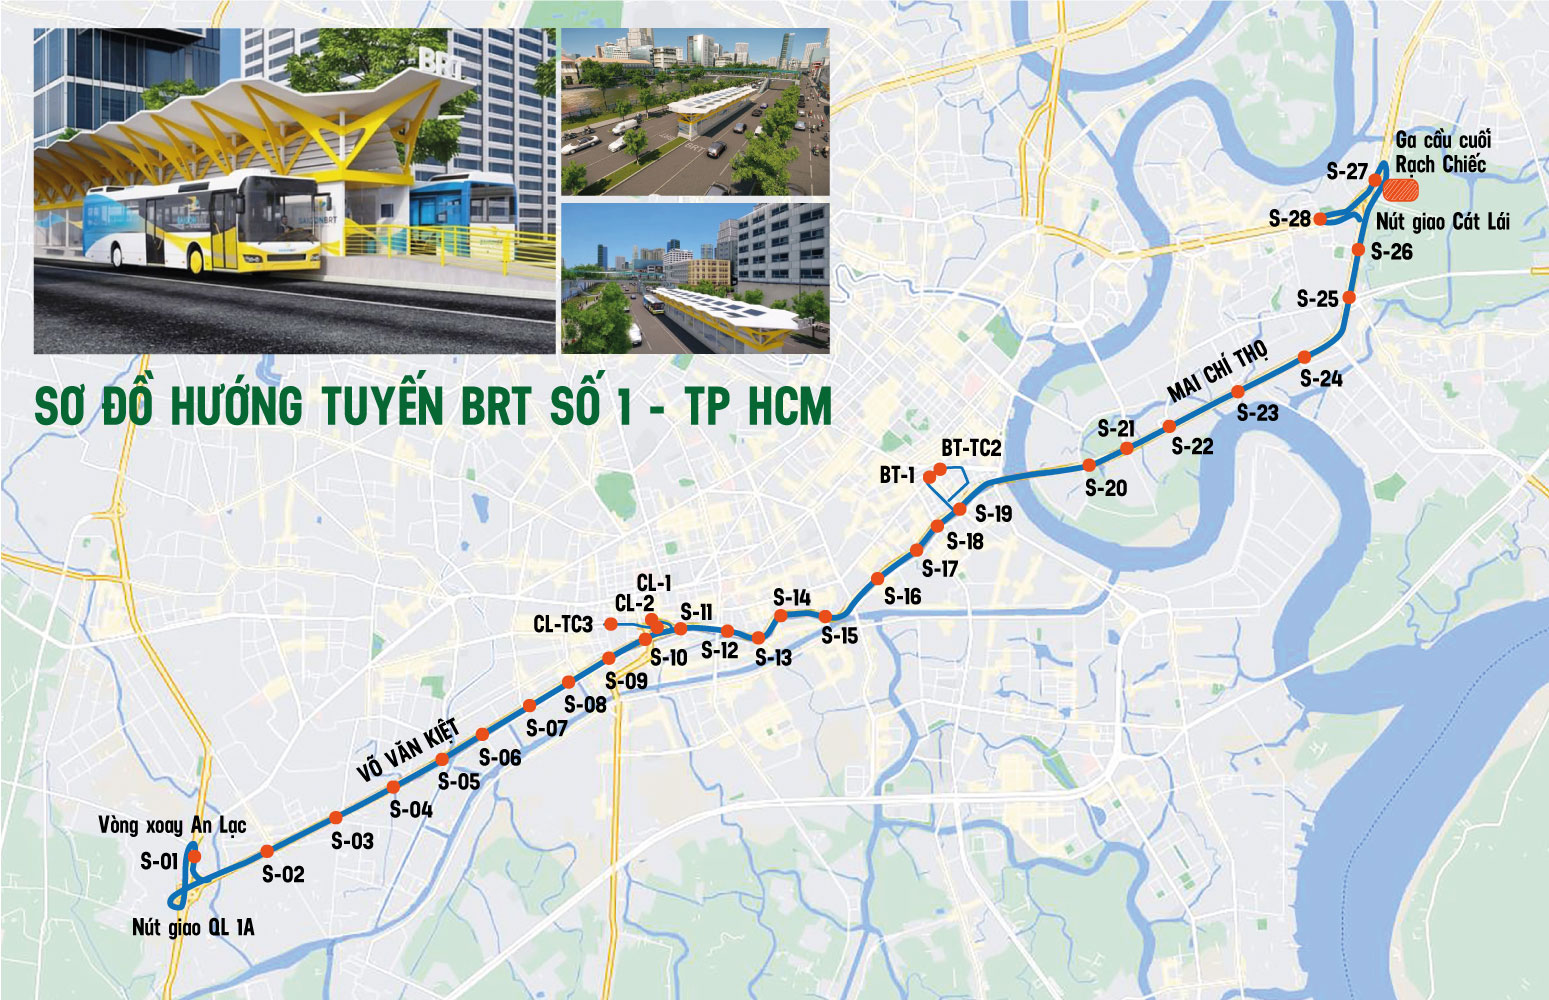 Cận cảnh đại lộ rộng 70 m, sắp có tuyến BRT đầu tiên ở TP. HCM - Ảnh 11.